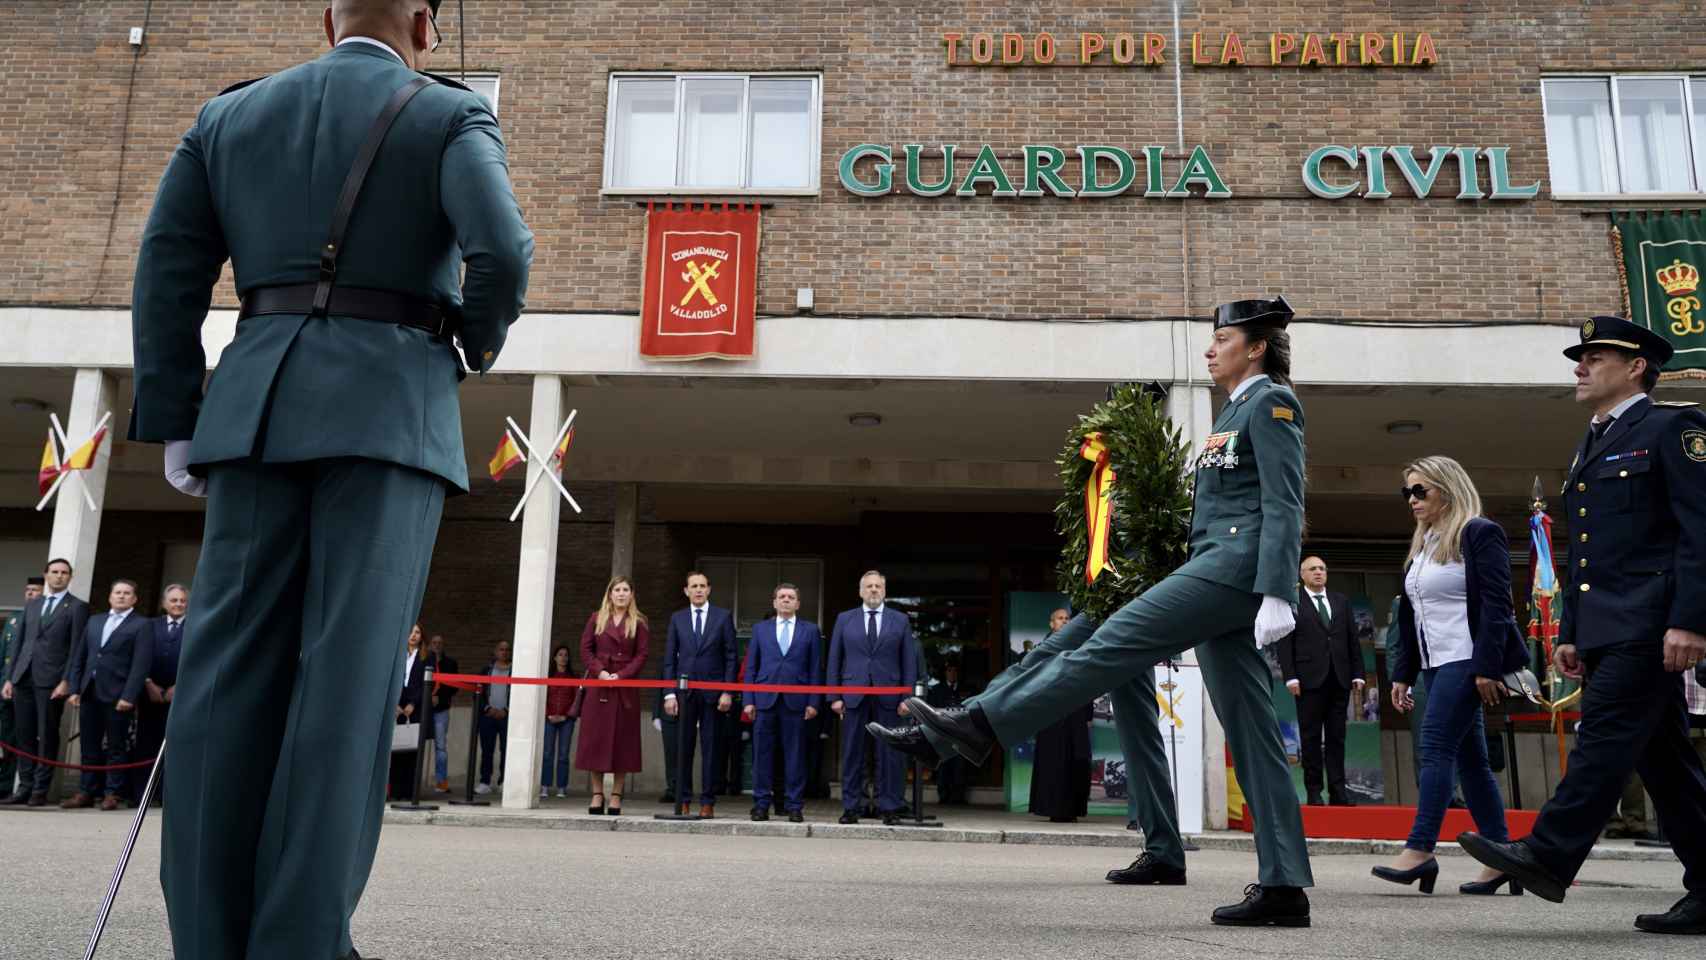 La Guardia Civil de Valladolid celebra el 180 aniversario de su fundación